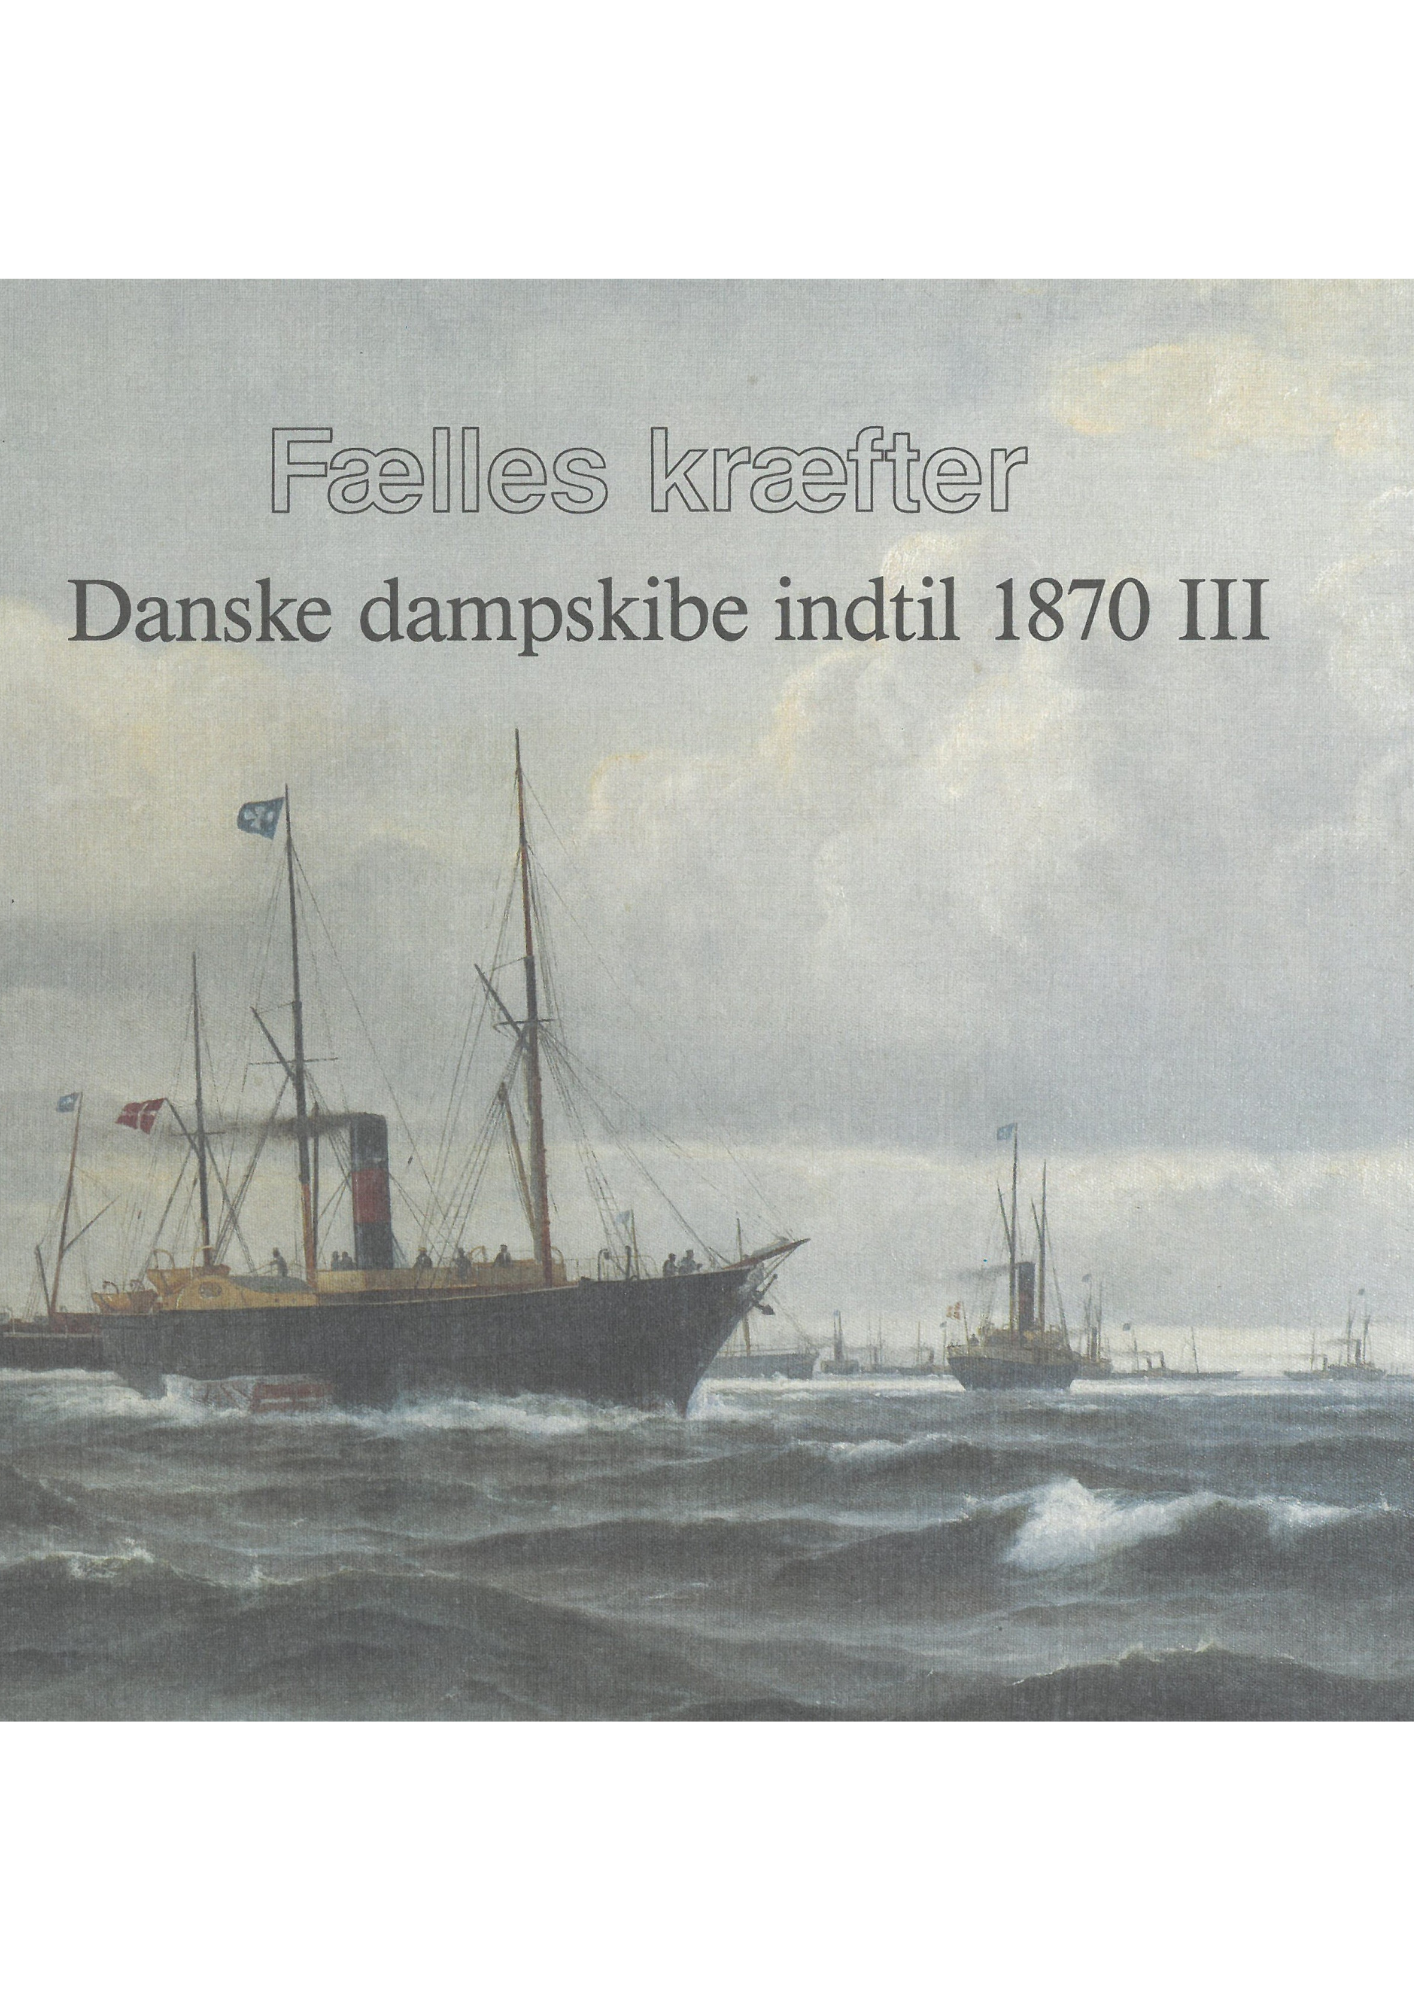 Fælles kræfter - Danske dampskibe indtil 1870 III